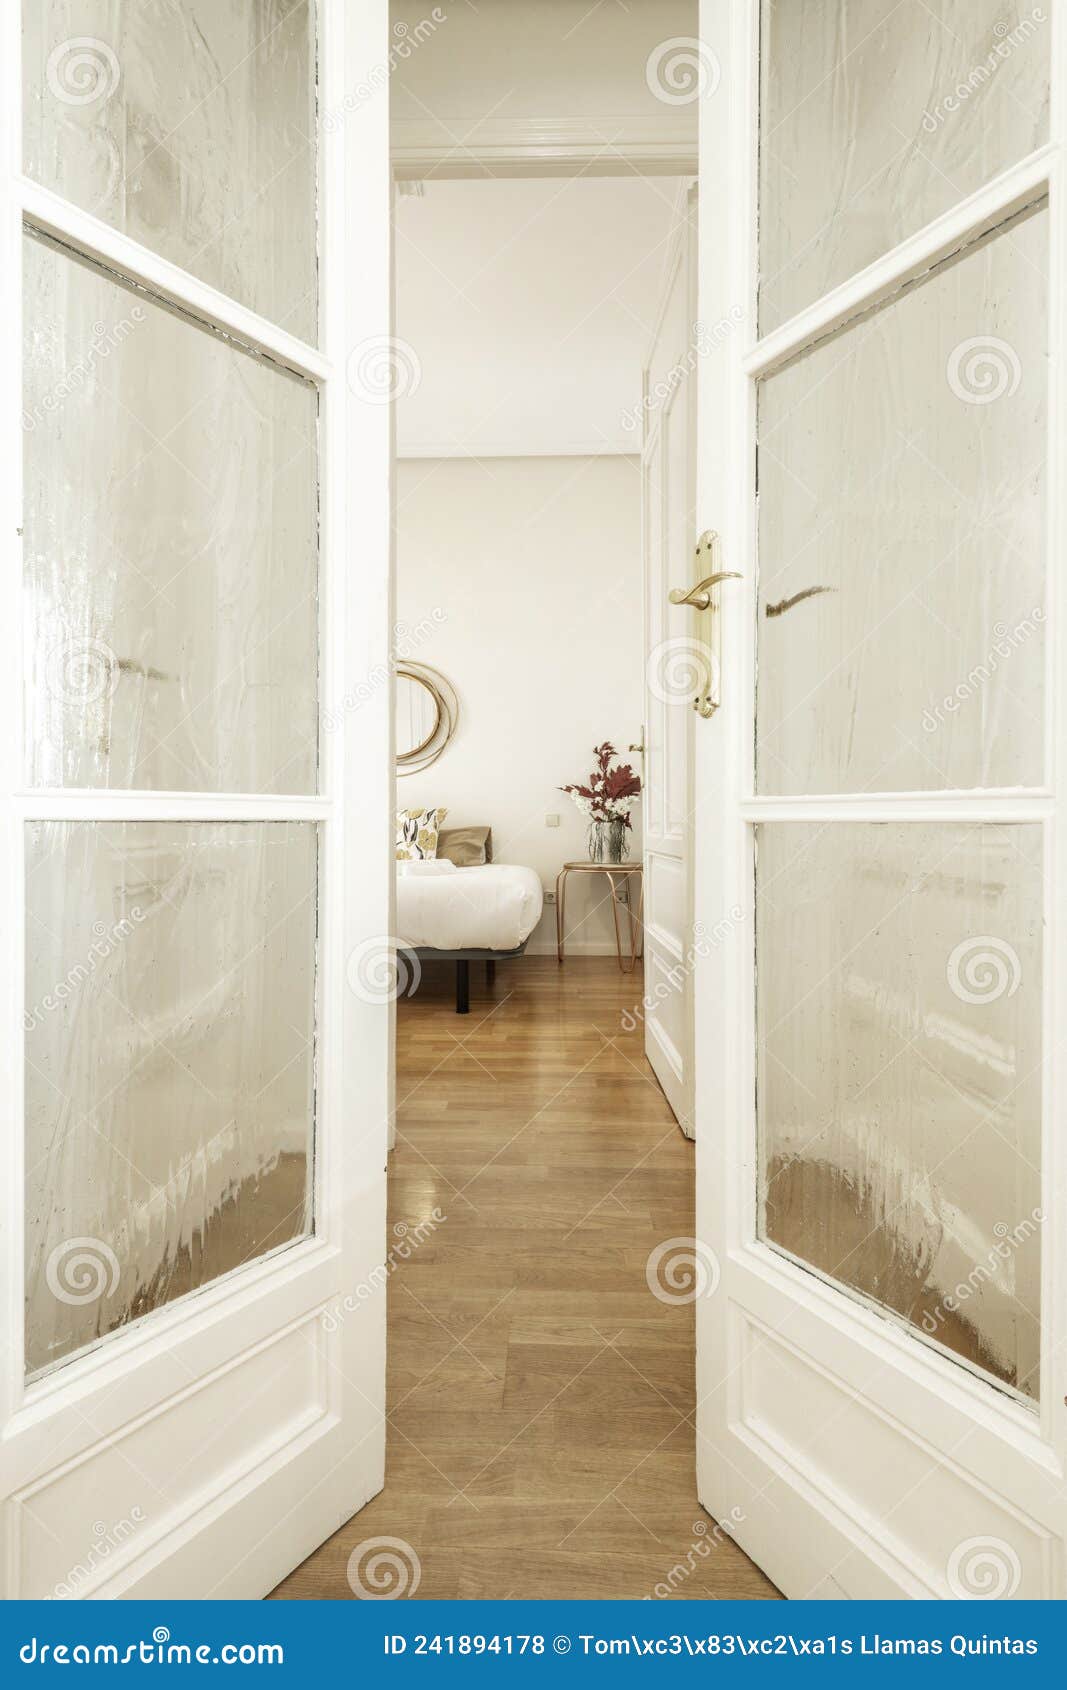 Voyeur View between Wooden and Glass Doors To a Bedroom Stock Photo